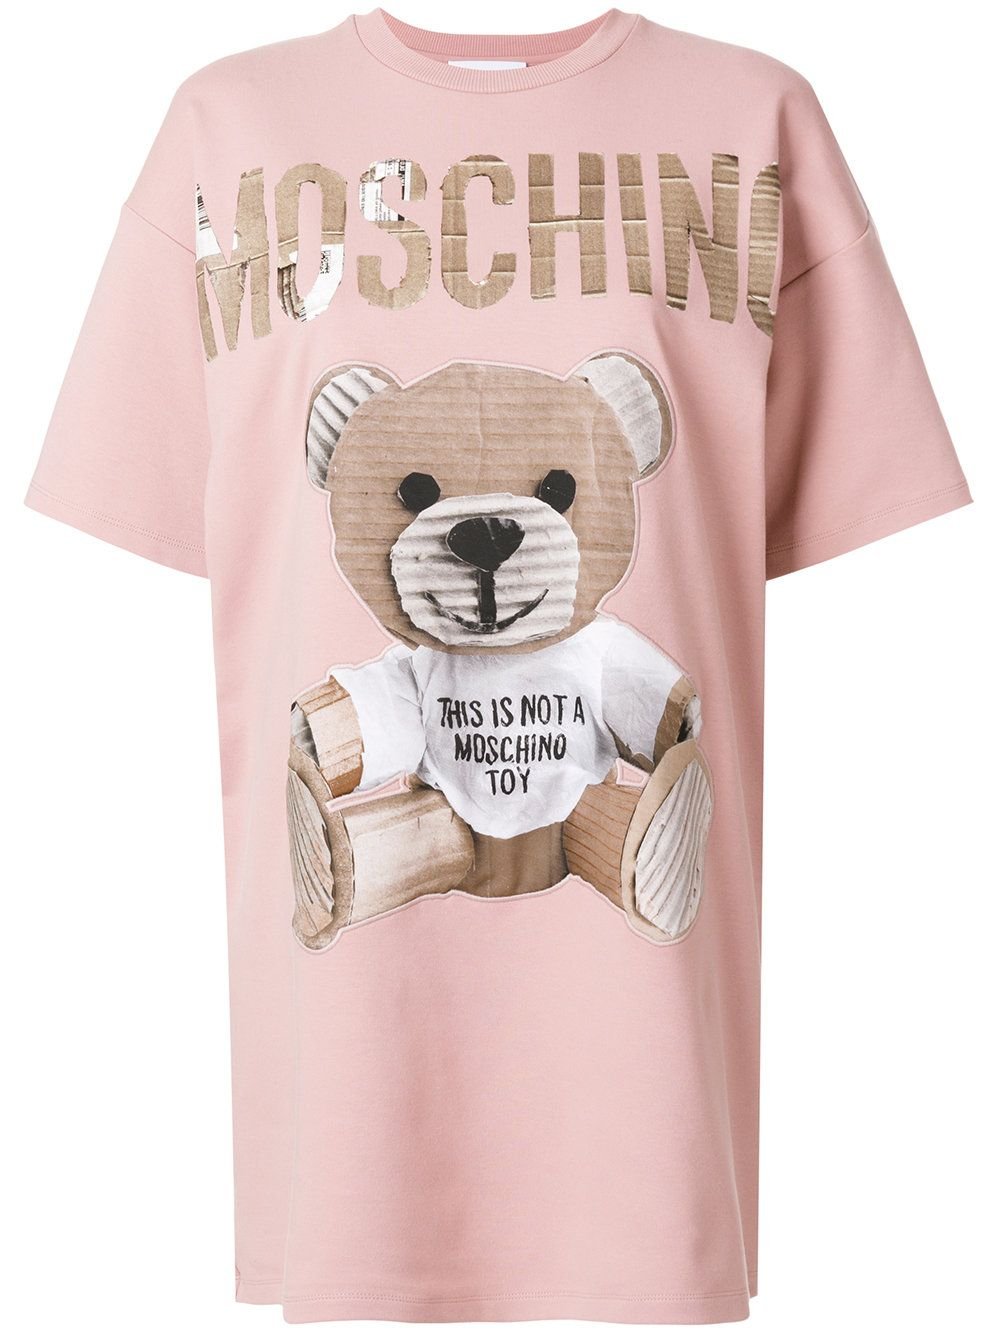 Футболка с мишкой купить. Футболка Мошино с медведем. Moschino Teddy Pink t Shirt. Москино футболка с медведем. Футболка Москино с мишкой женская.